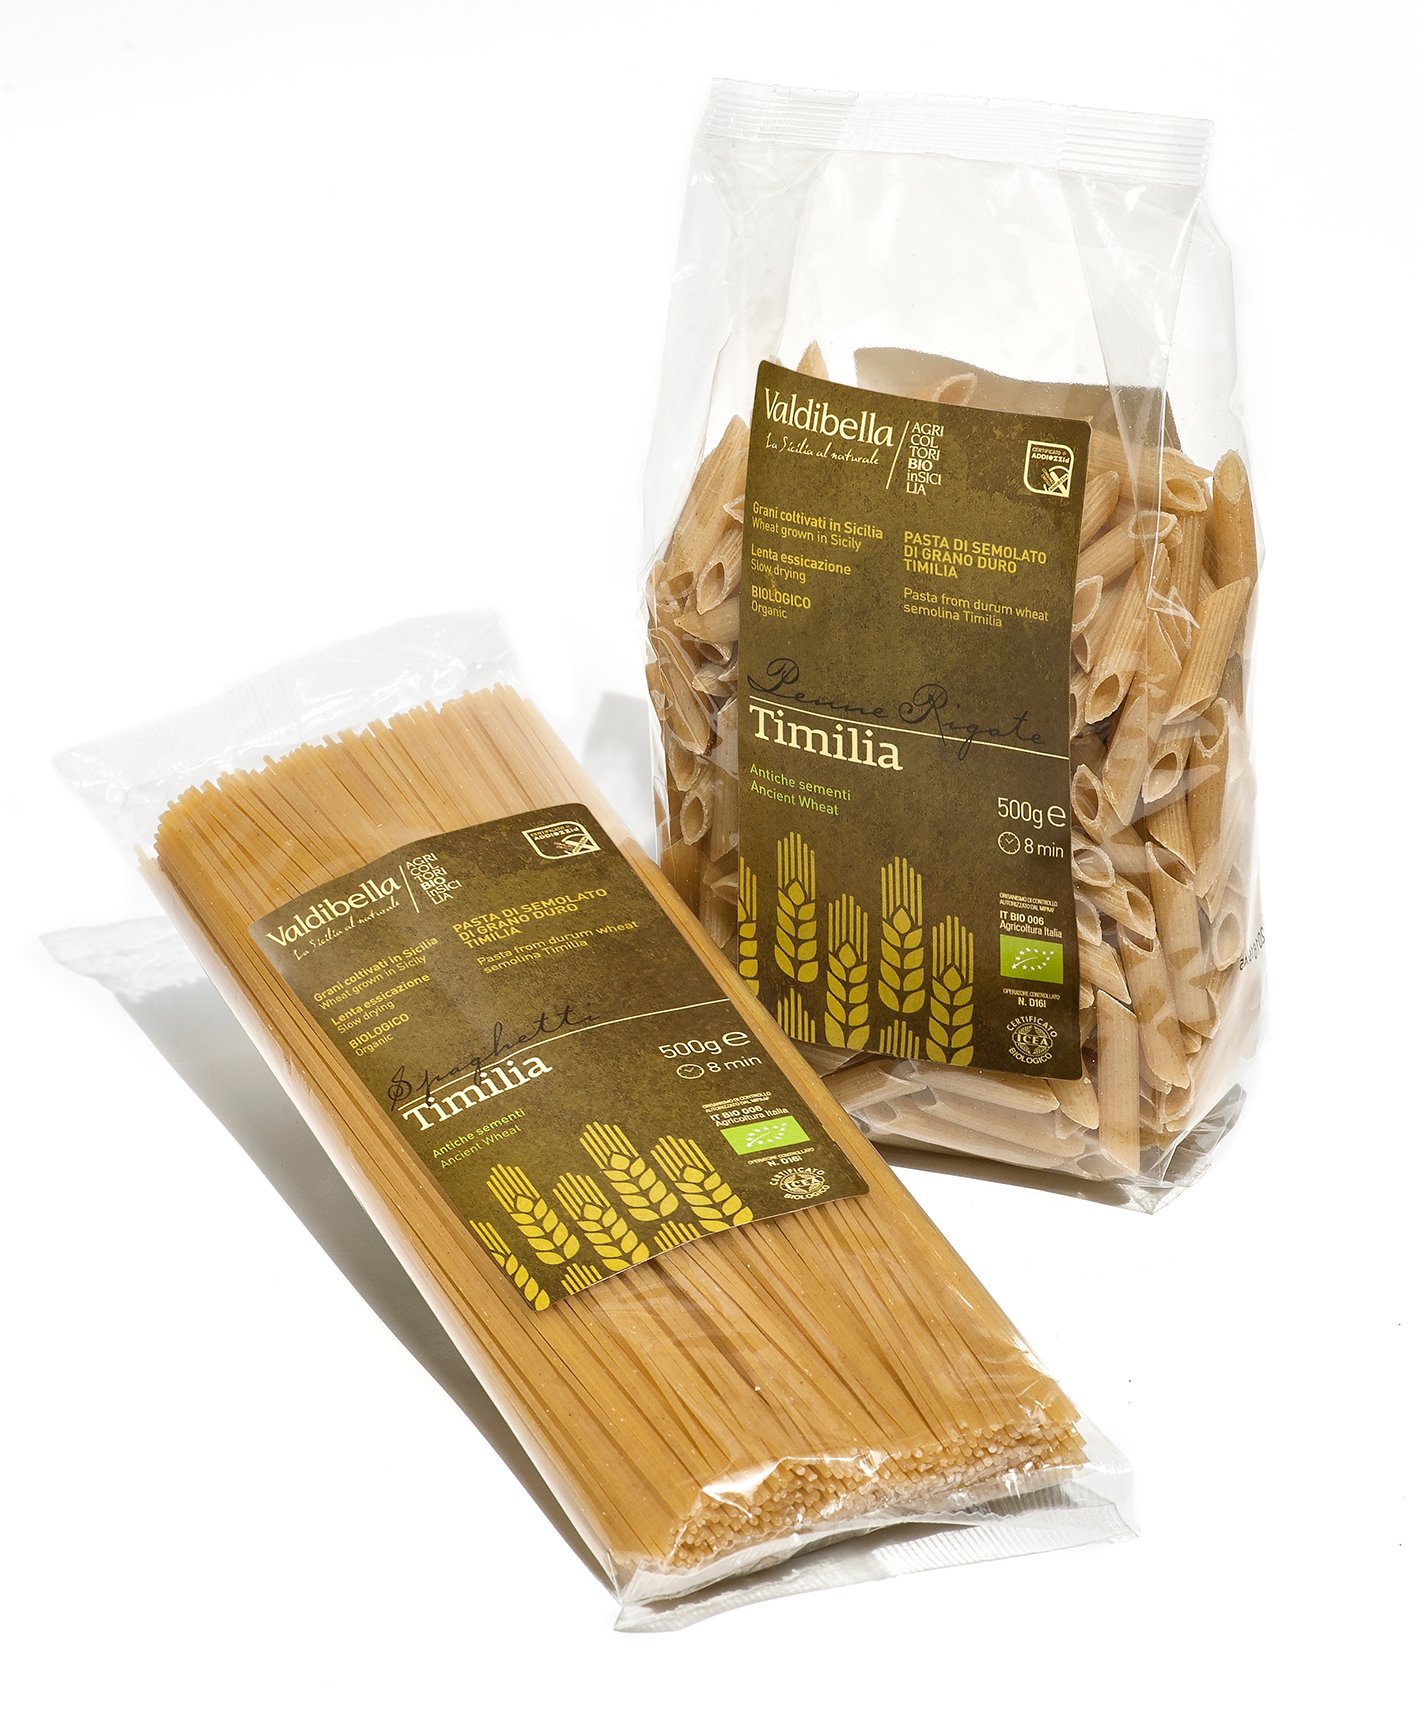 pasta-100-italiana-valdibella